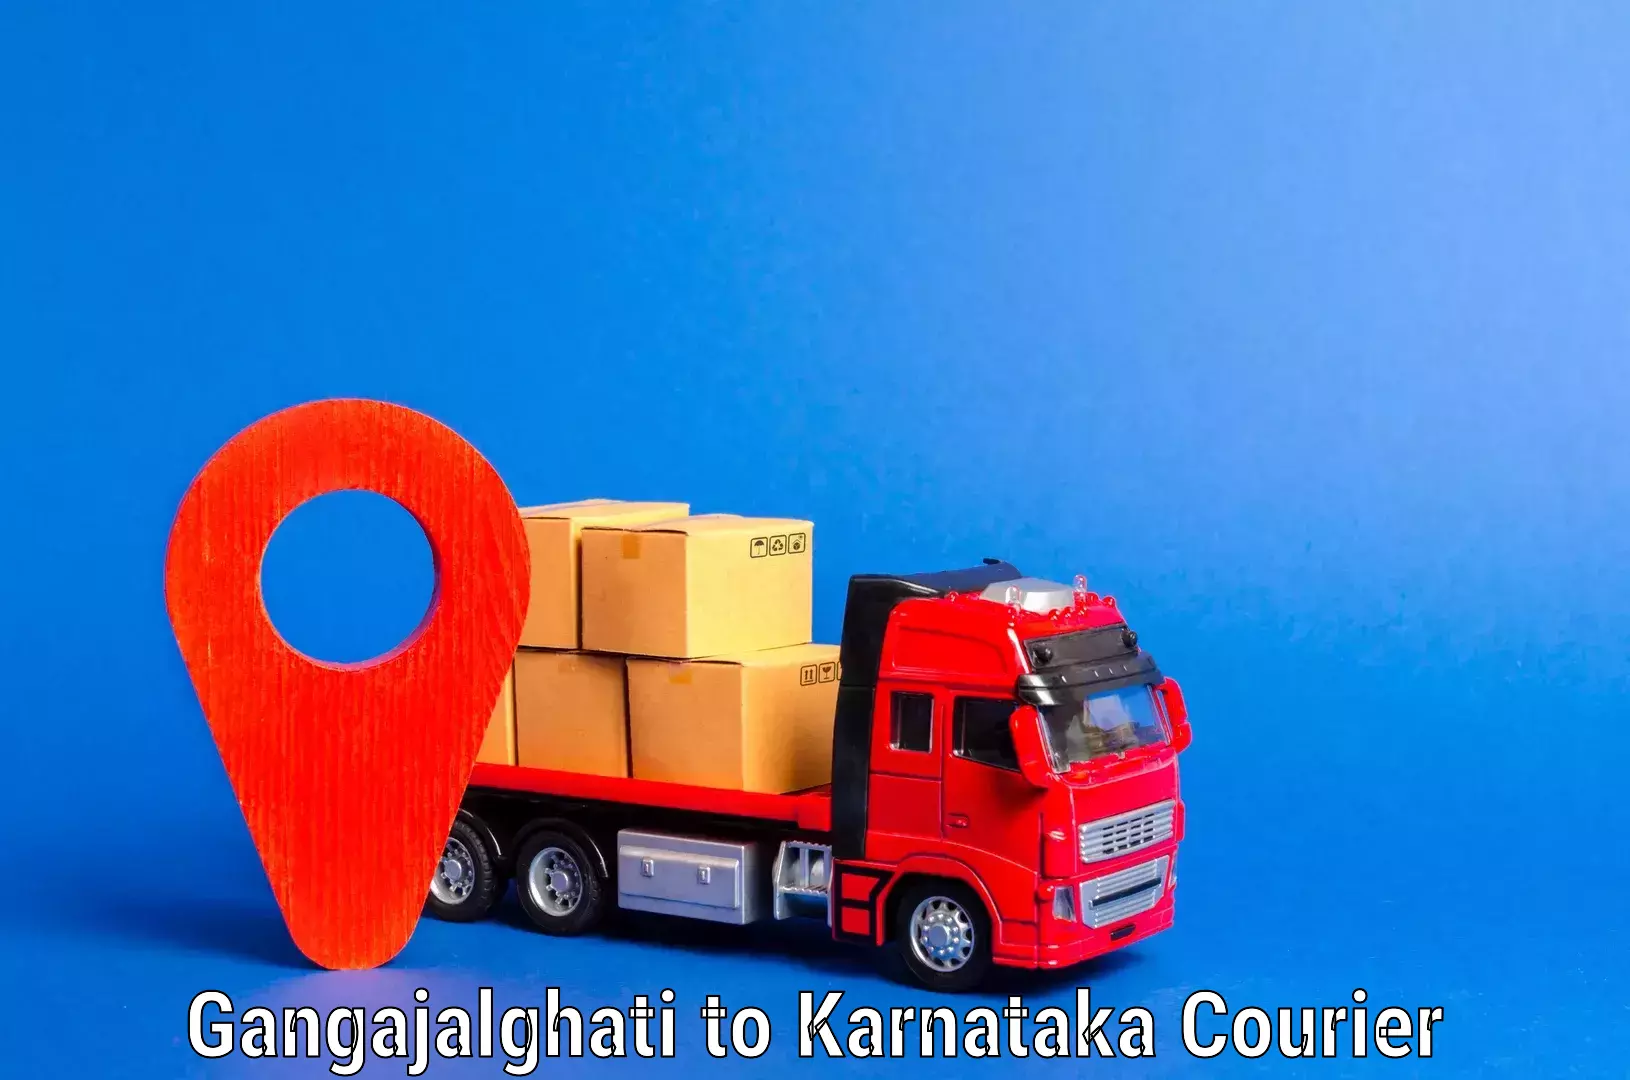 Furniture moving services Gangajalghati to Karnataka